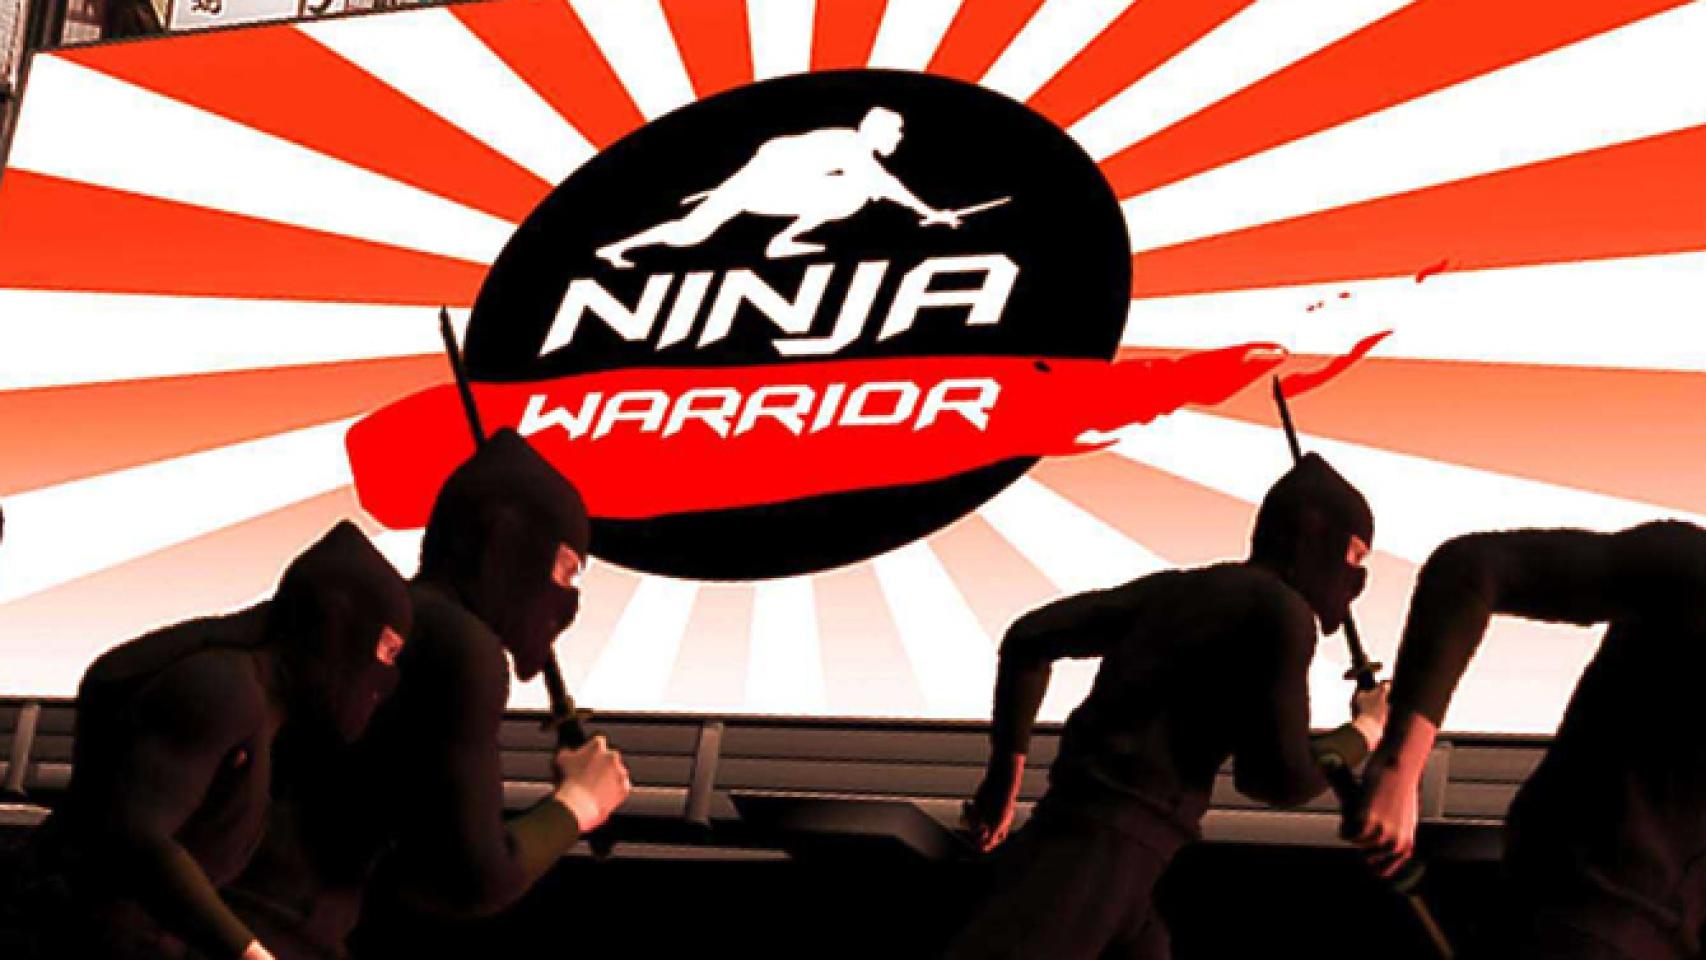 Arturo Valls, Pilar Rubio y Manolo Lama posan en el plató de 'Ninja Warrior'